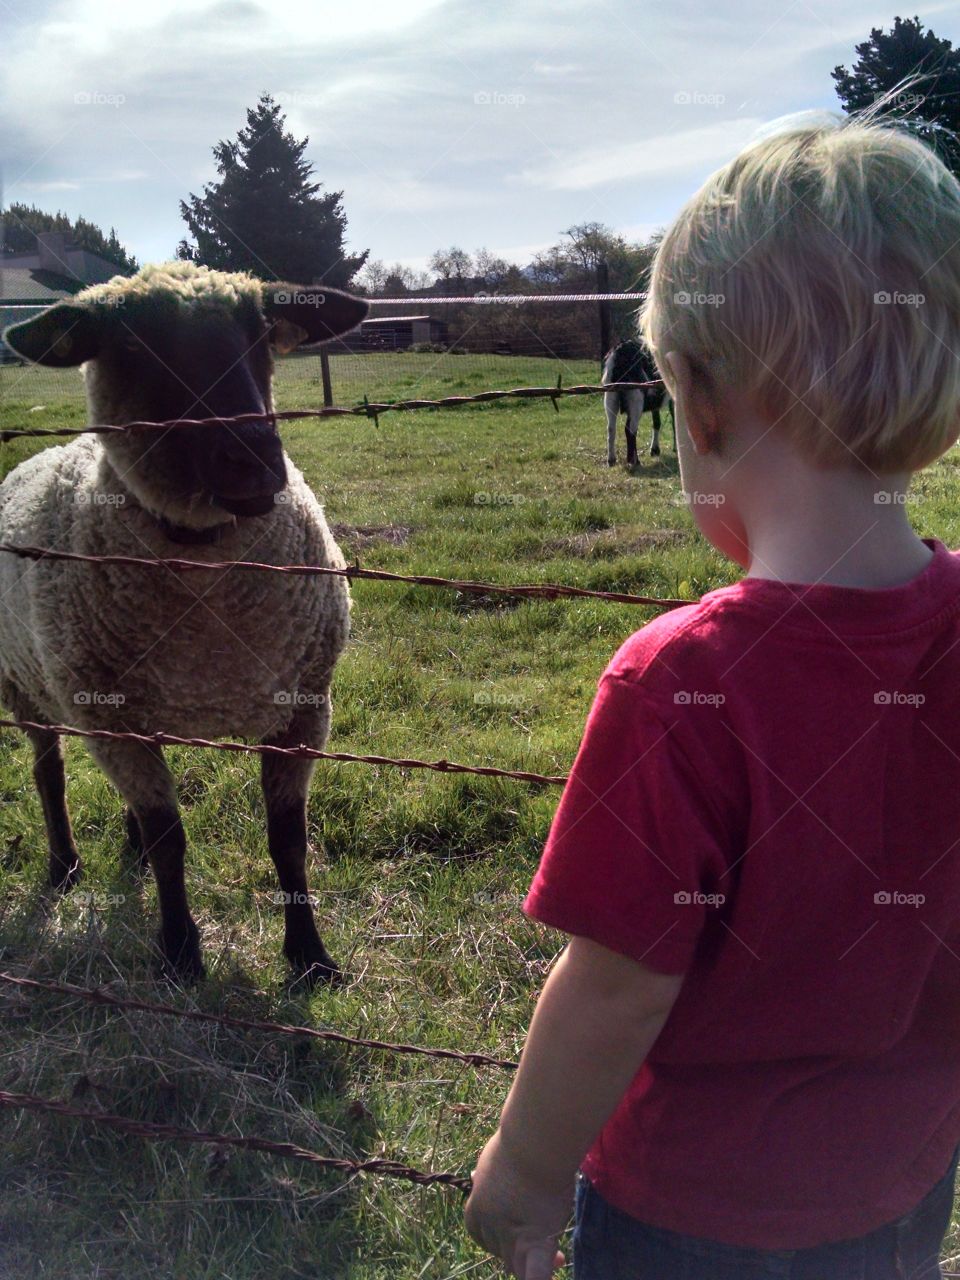 lamb and boy